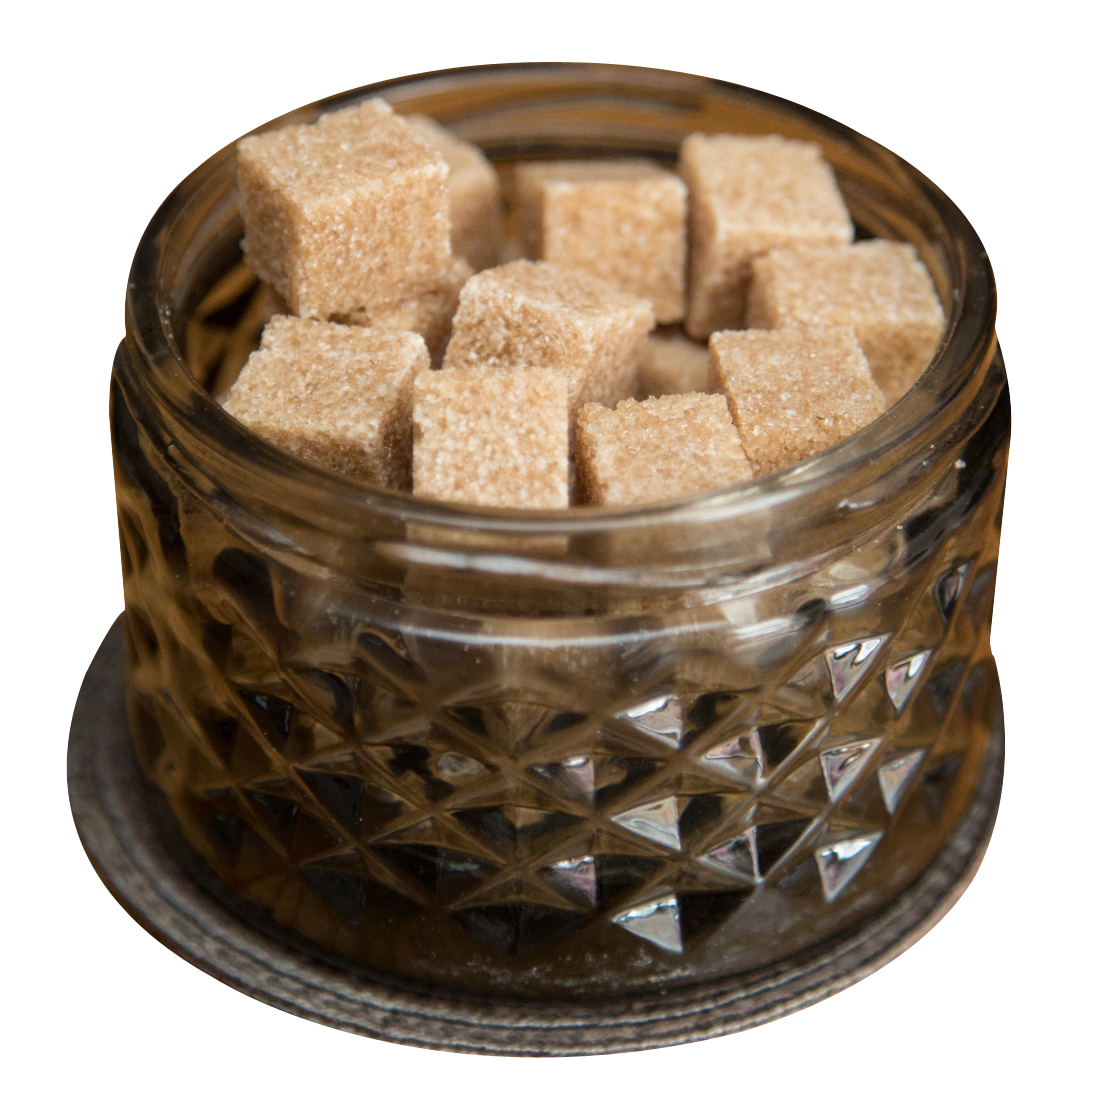 Brown Sugar Cubesin Glass Jar PNG